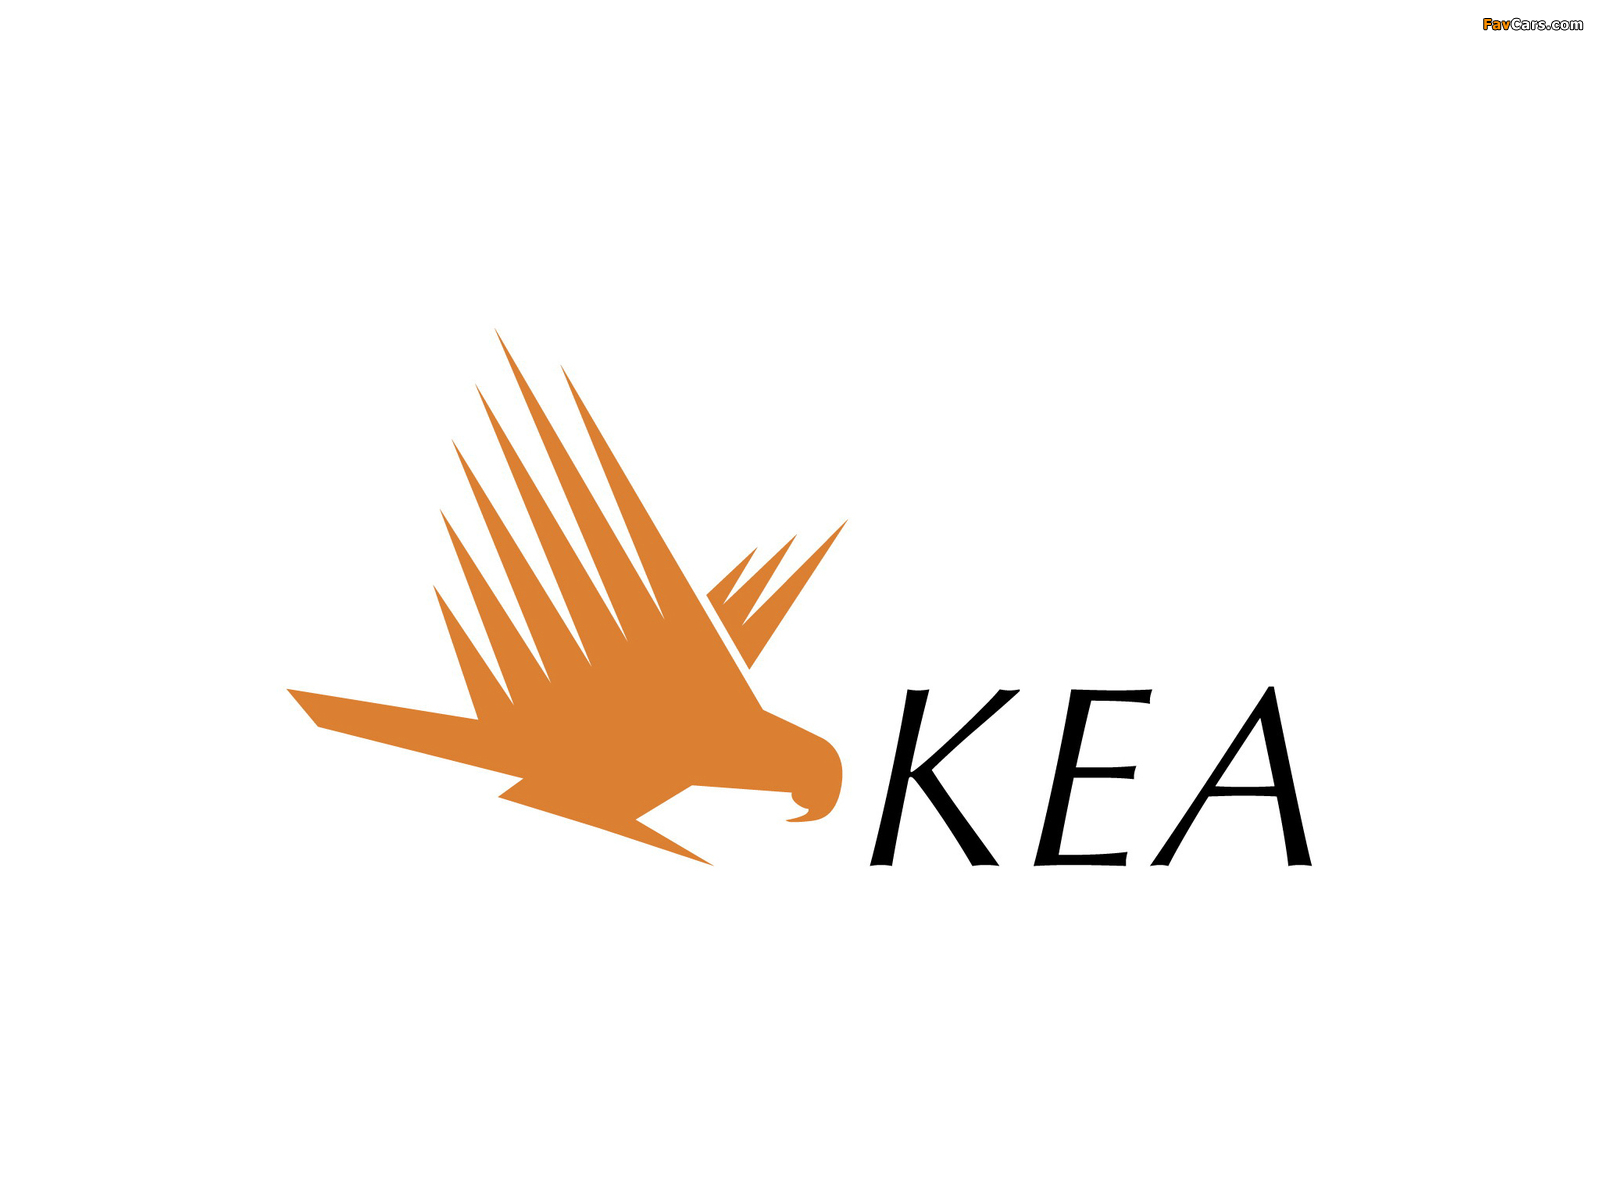 KEA images (1600 x 1200)